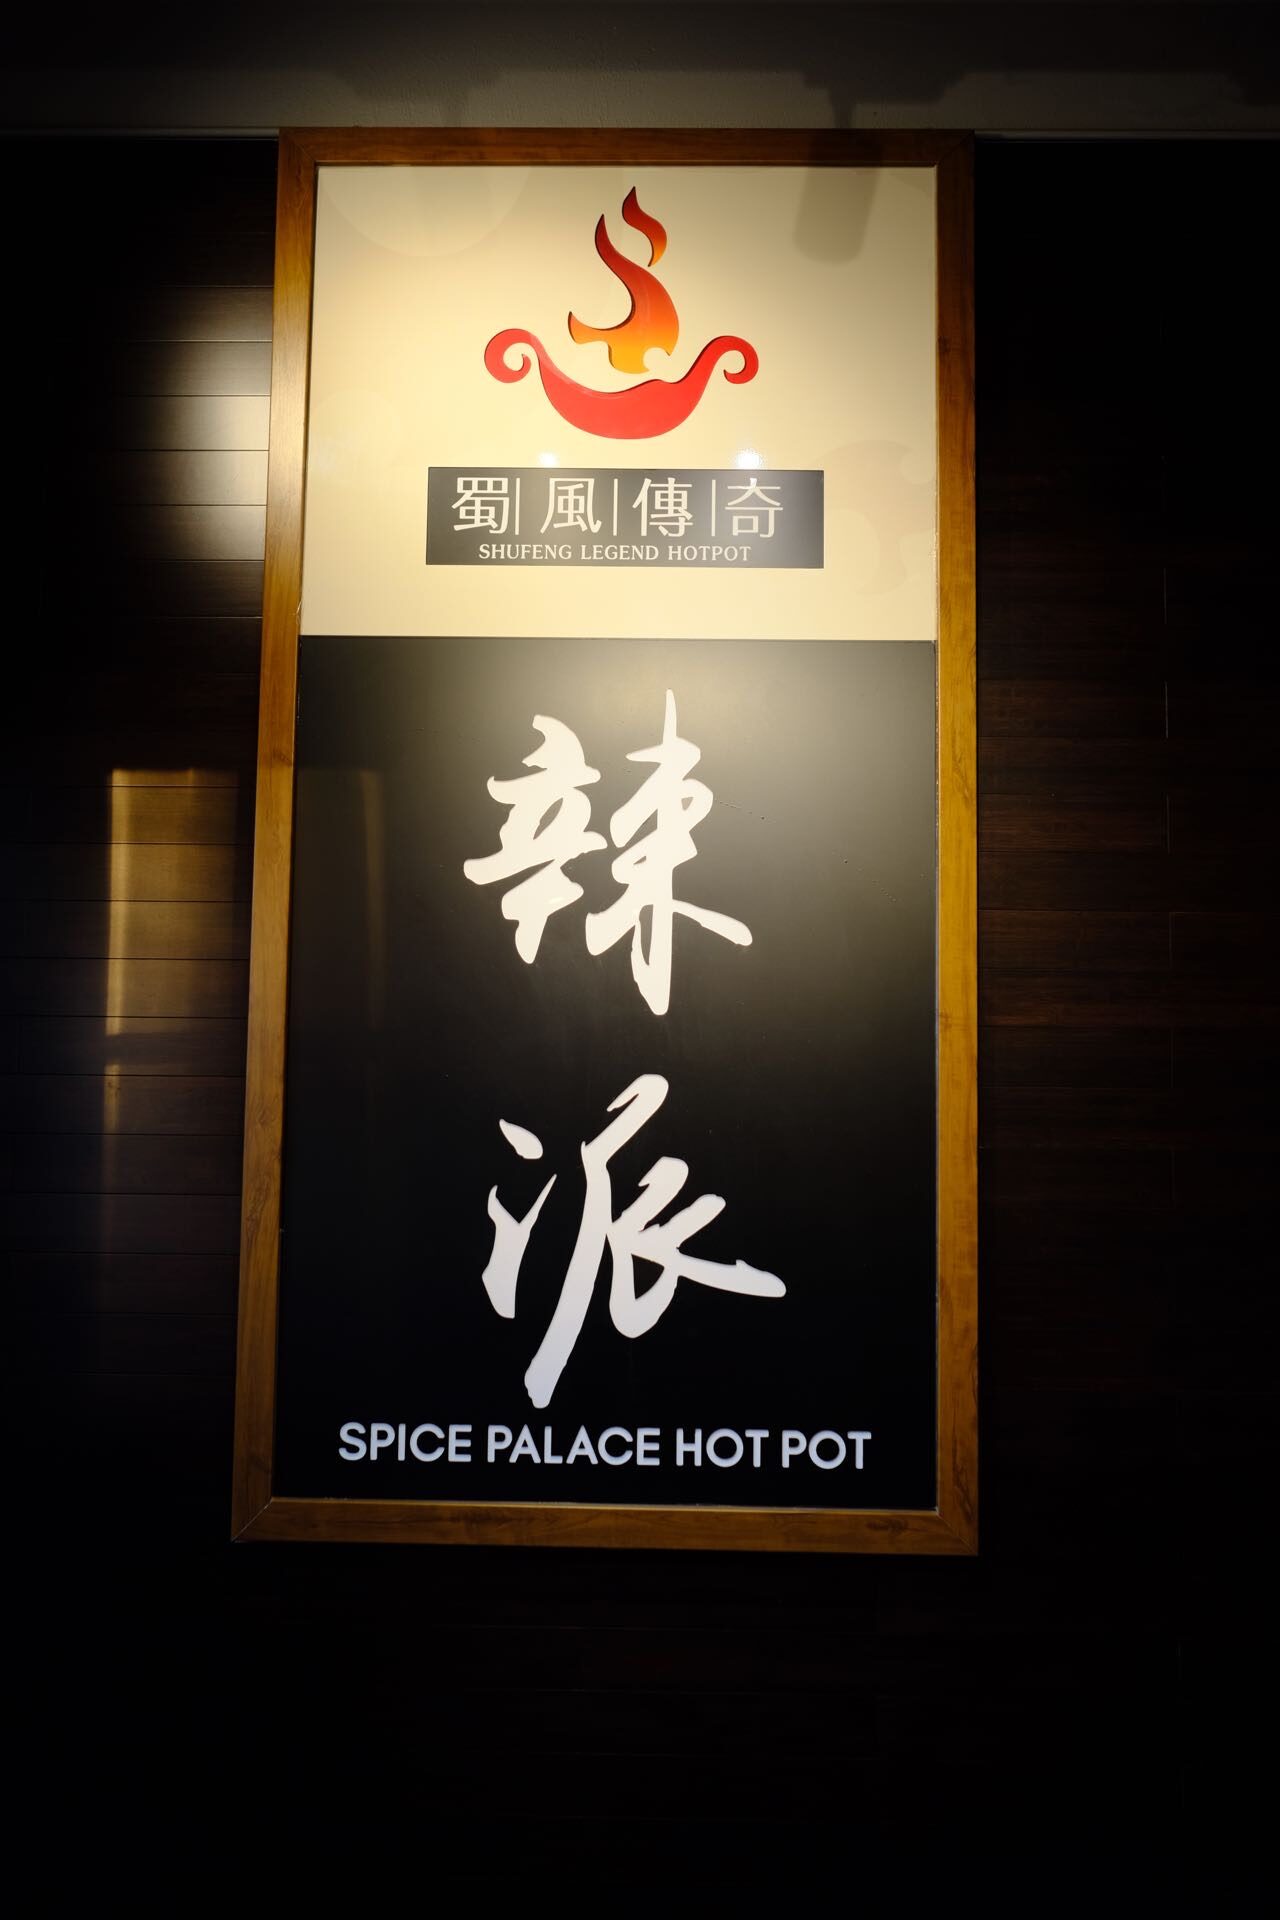 蜀风传奇火锅 Spice Palace